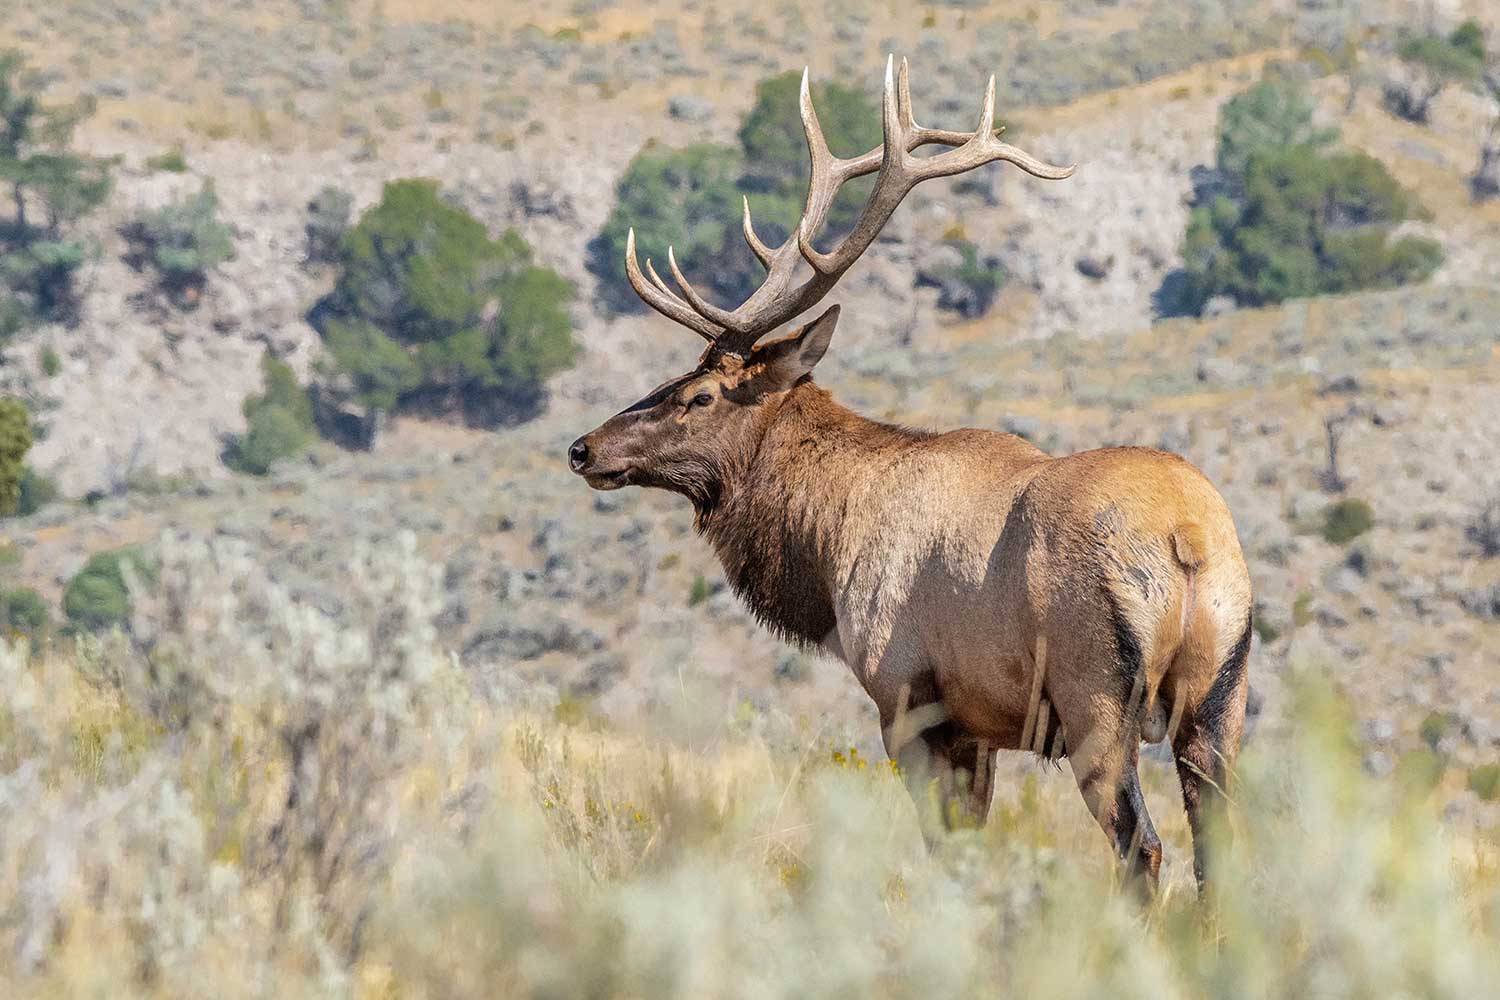 elk stands in open field in new mexico wildlife habitat